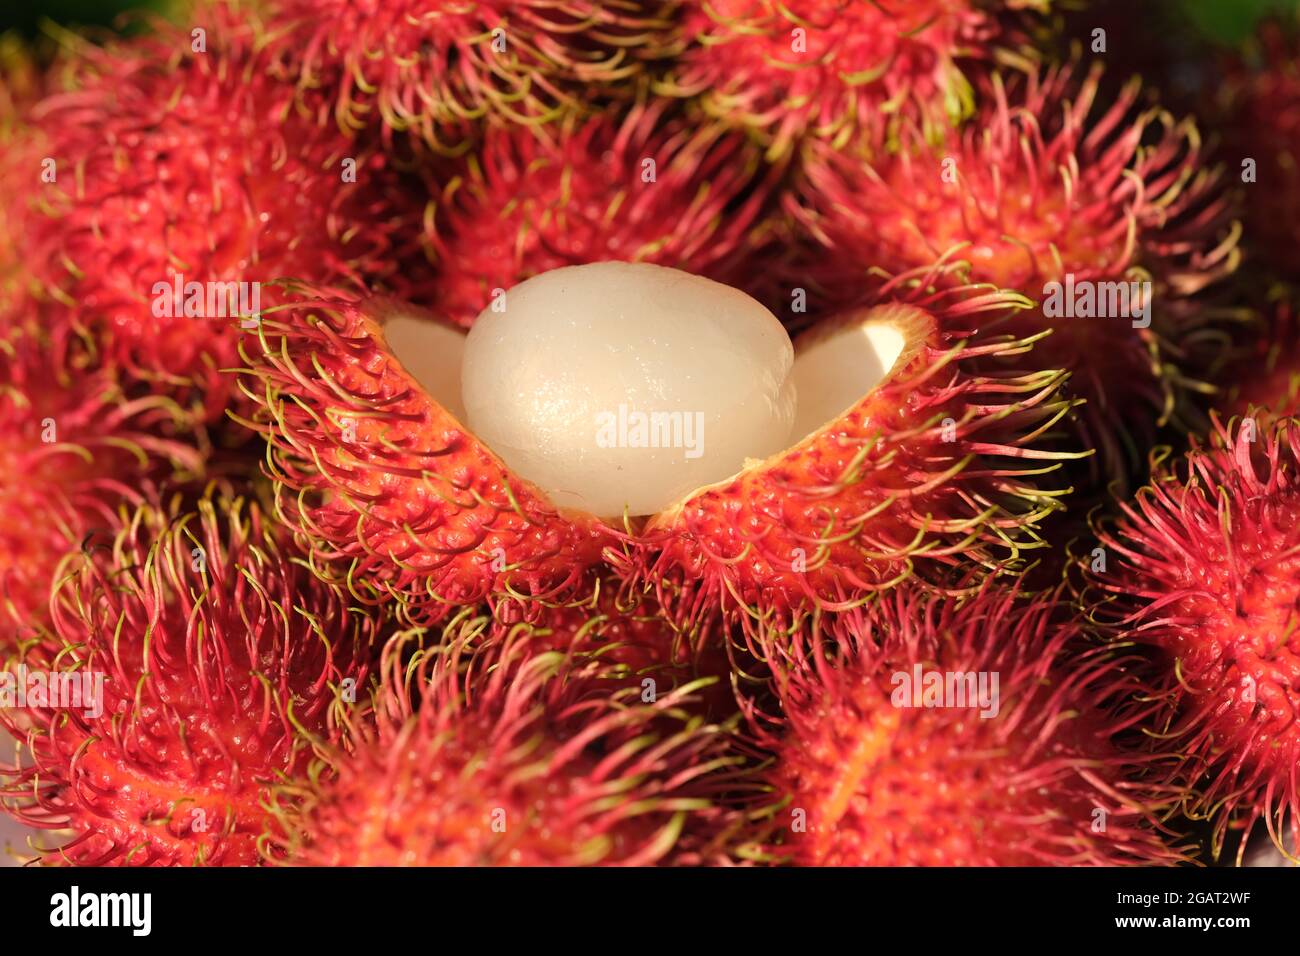 Indonesia Batam - Rambutan fruits - Nephelium lappaceum Stock Photo